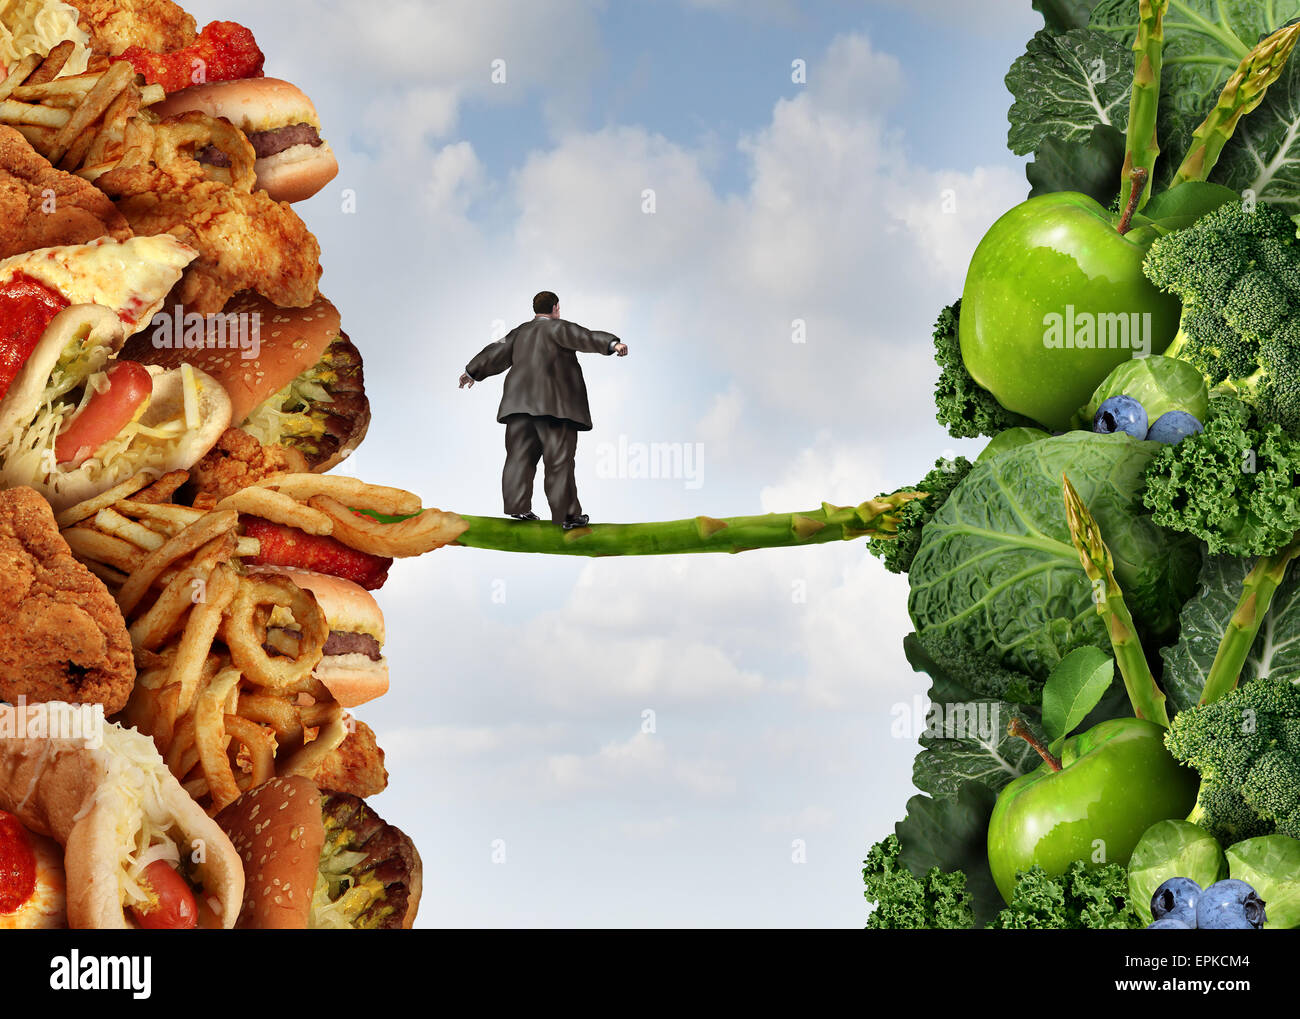 Ernährung umstellen gesunden Lifestyle-Konzept und den Mut, die Herausforderung des Schlusses Gewicht und Kampf gegen Übergewicht und Diabetes als eine übergewichtige Person zu Fuß auf ein Highwire Spargel aus fetthaltigen Lebensmitteln auf Gemüse und Obst zu akzeptieren. Stockfoto